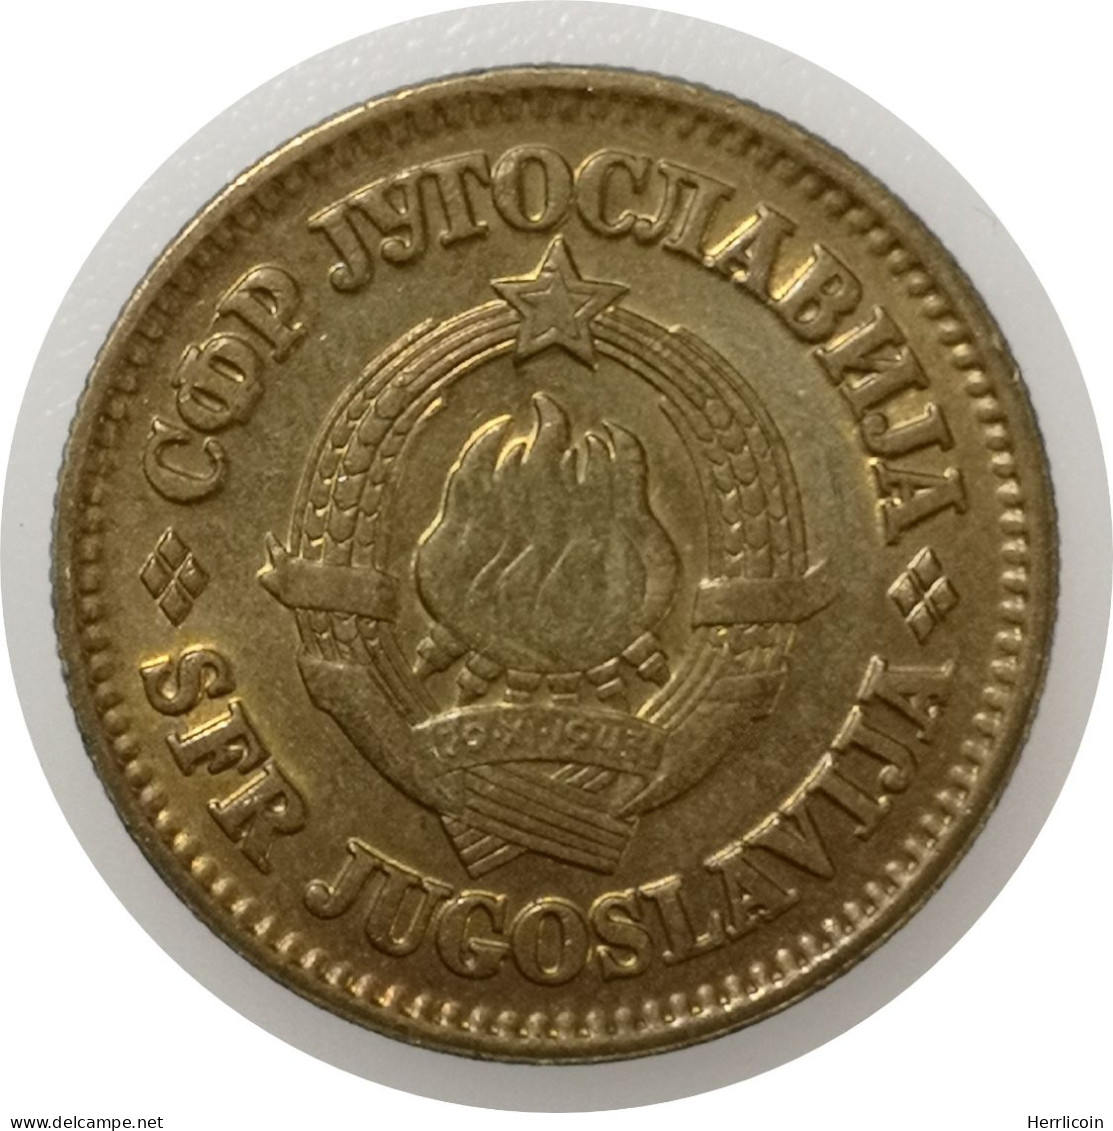 Monnaie Yougoslavie - 1978 - 50 Para - Jugoslavia